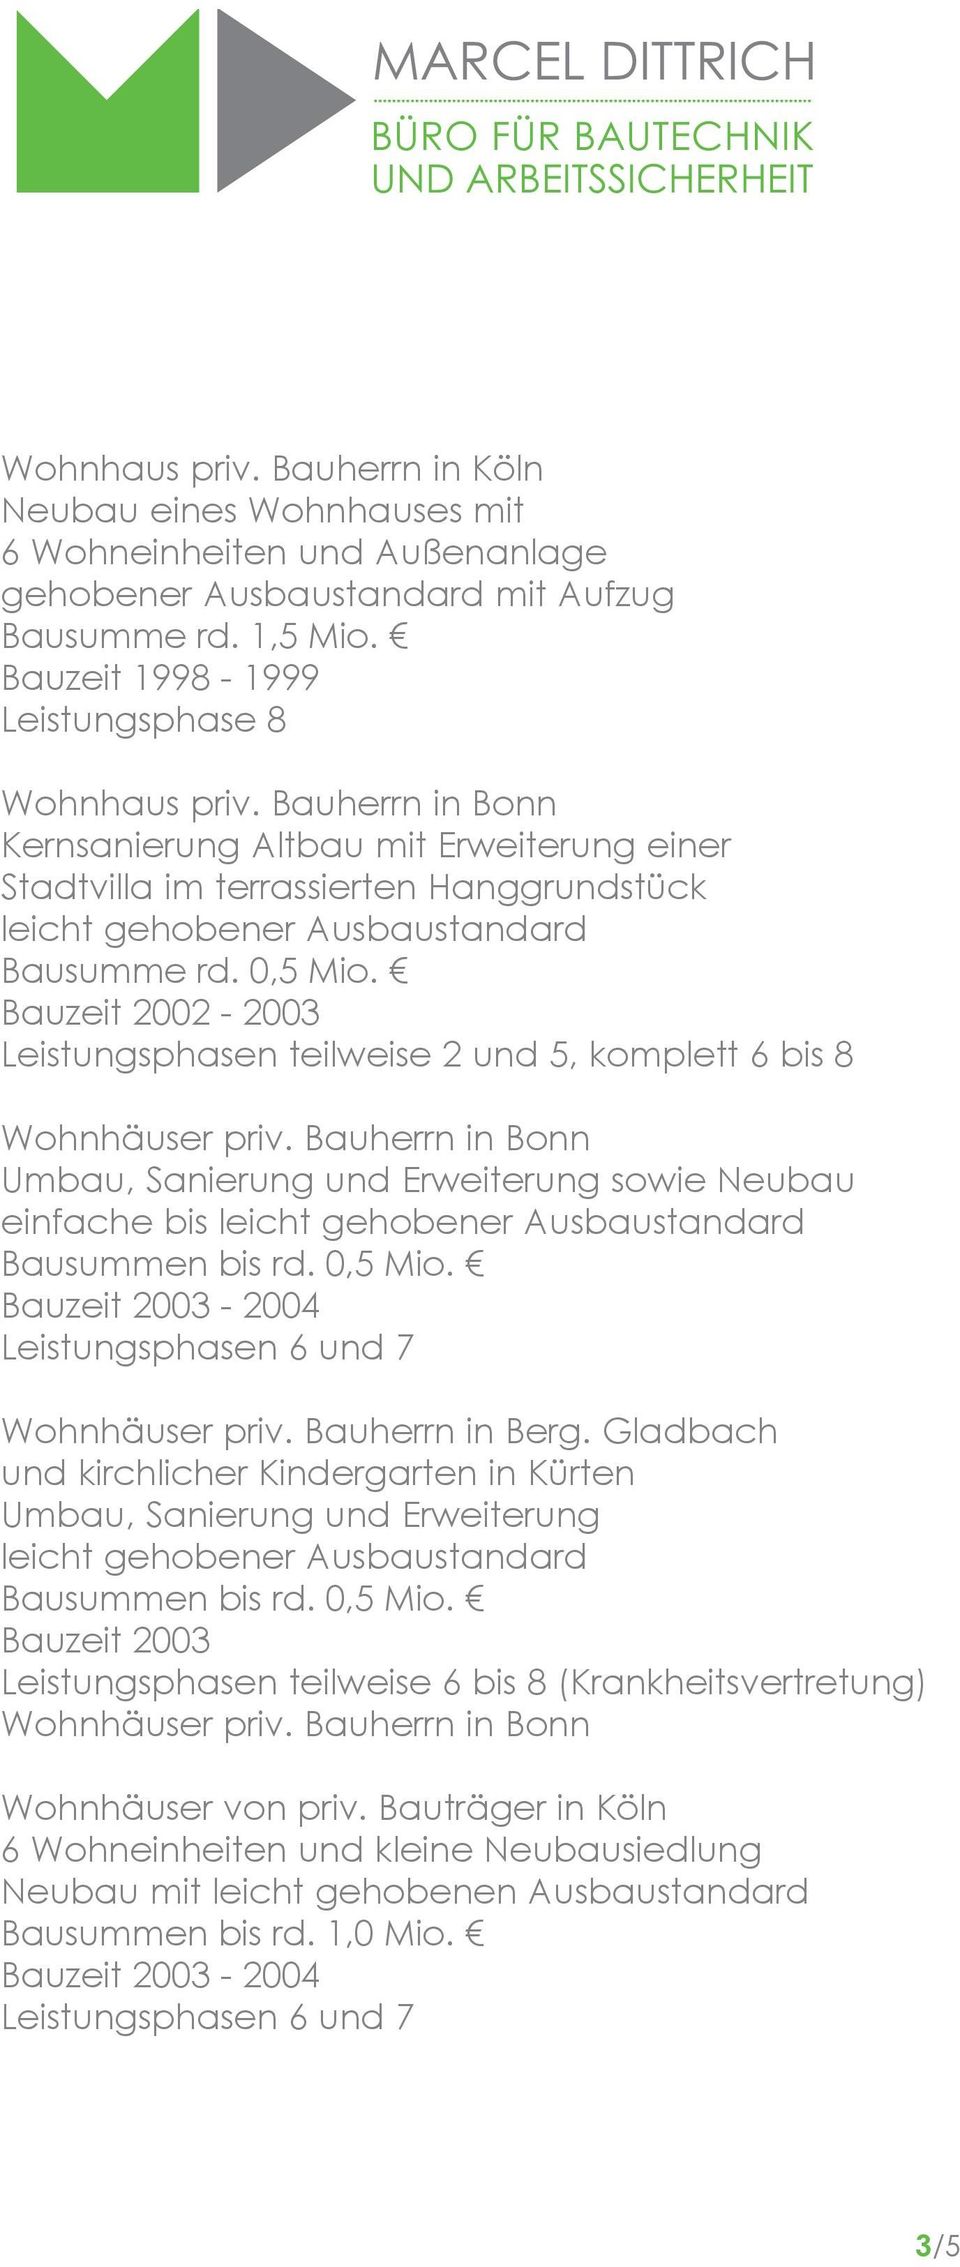 Bauzeit 2002-2003 Leistungsphasen teilweise 2 und 5, komplett 6 bis 8 Wohnhäuser priv. Bauherrn in Bonn Umbau, Sanierung und Erweiterung sowie Neubau einfache bis Bausummen bis rd. 0,5 Mio.